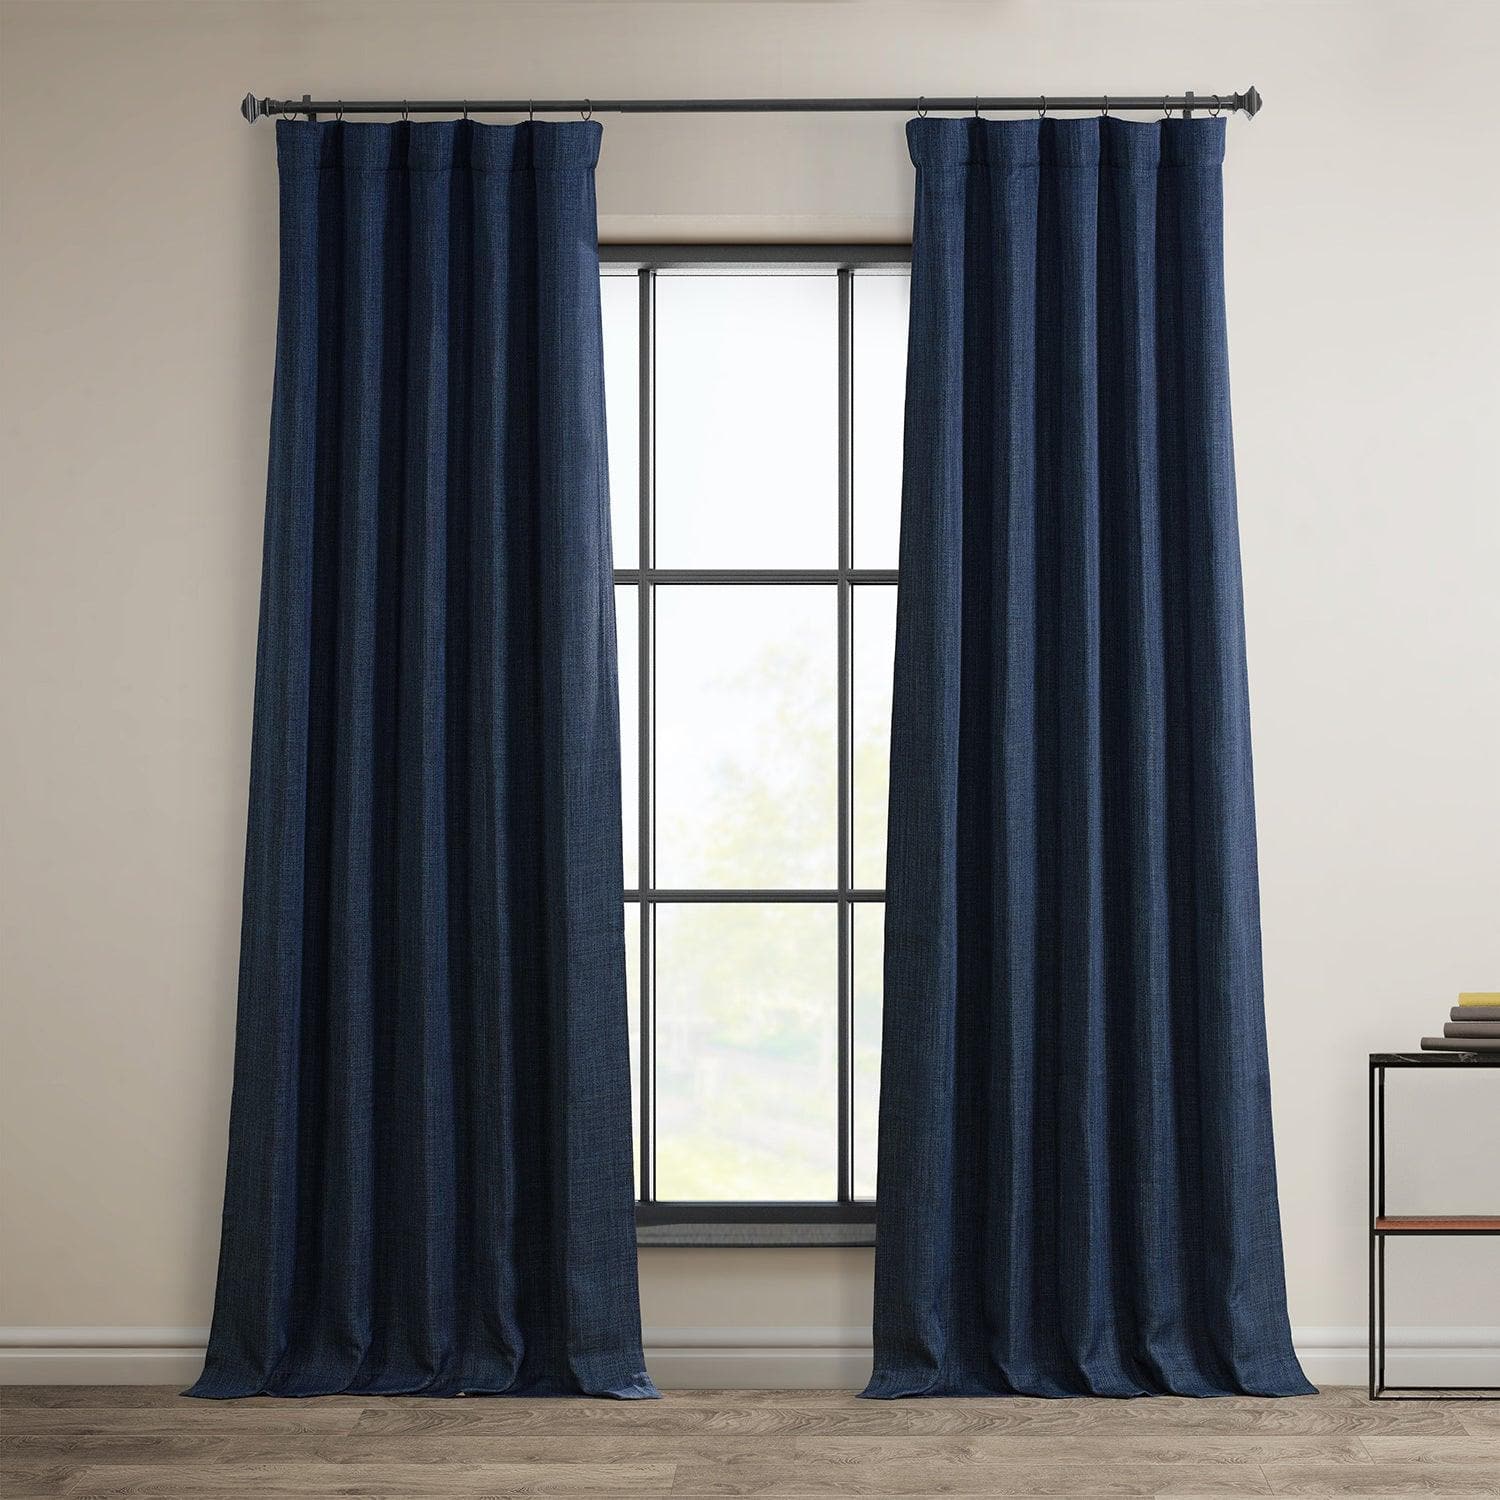 Indigo Textured Faux Linen Room Darkening Curtain